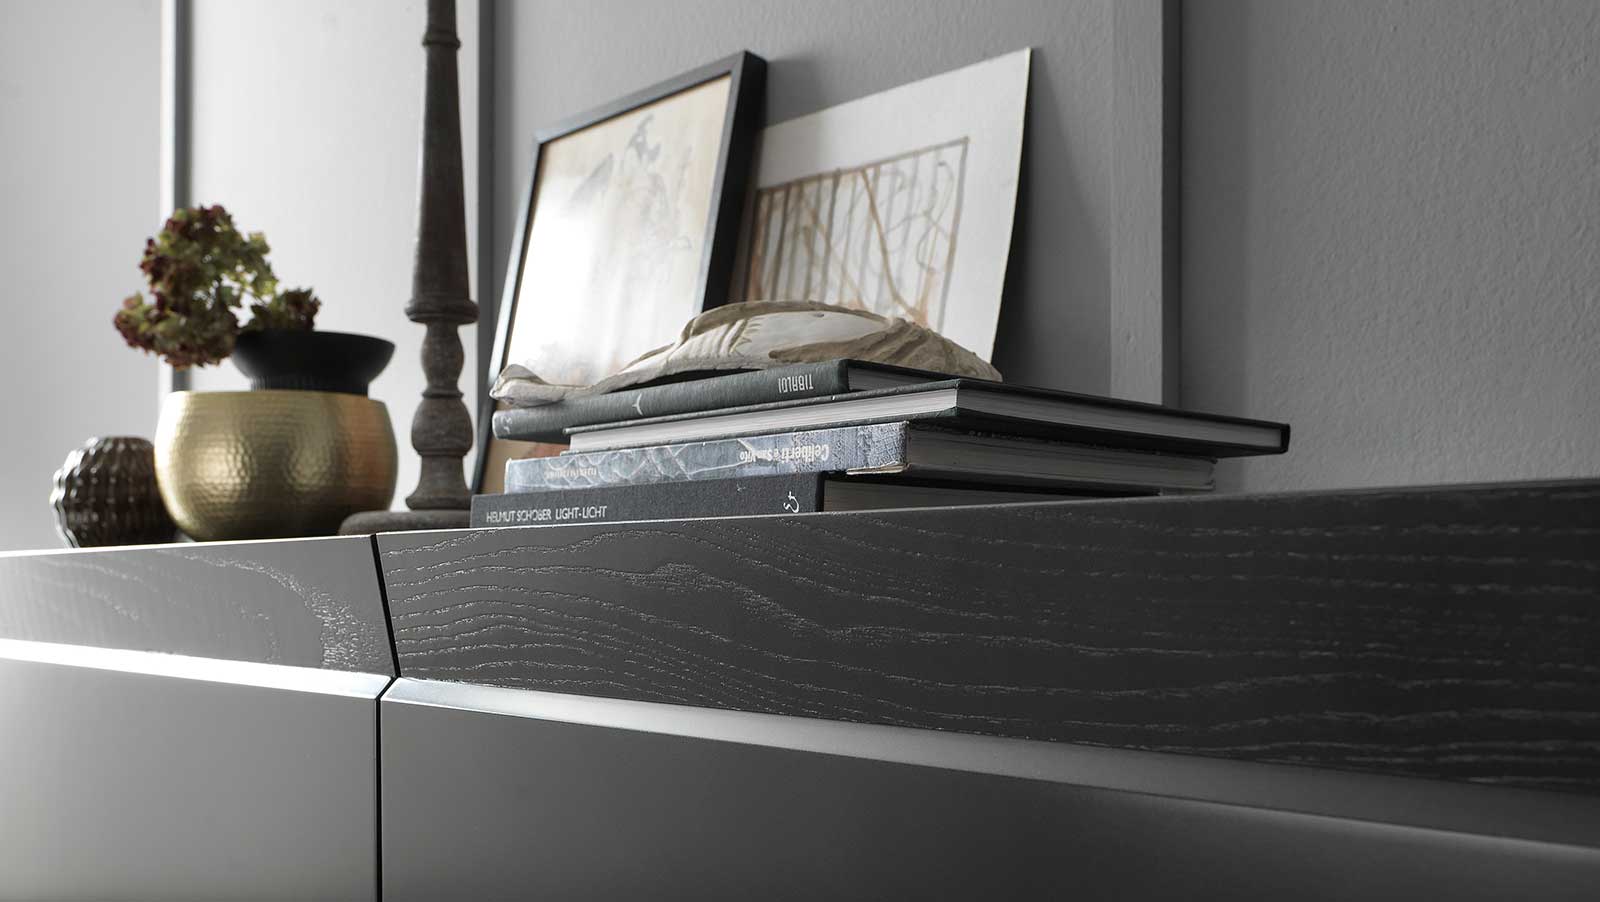 Buffet 3 portes en bois couleur gris et noir. Formes rationnelles, design de Andrea Lucatello. 3 étagères en verre, top en céramique. Livraison à domicile.